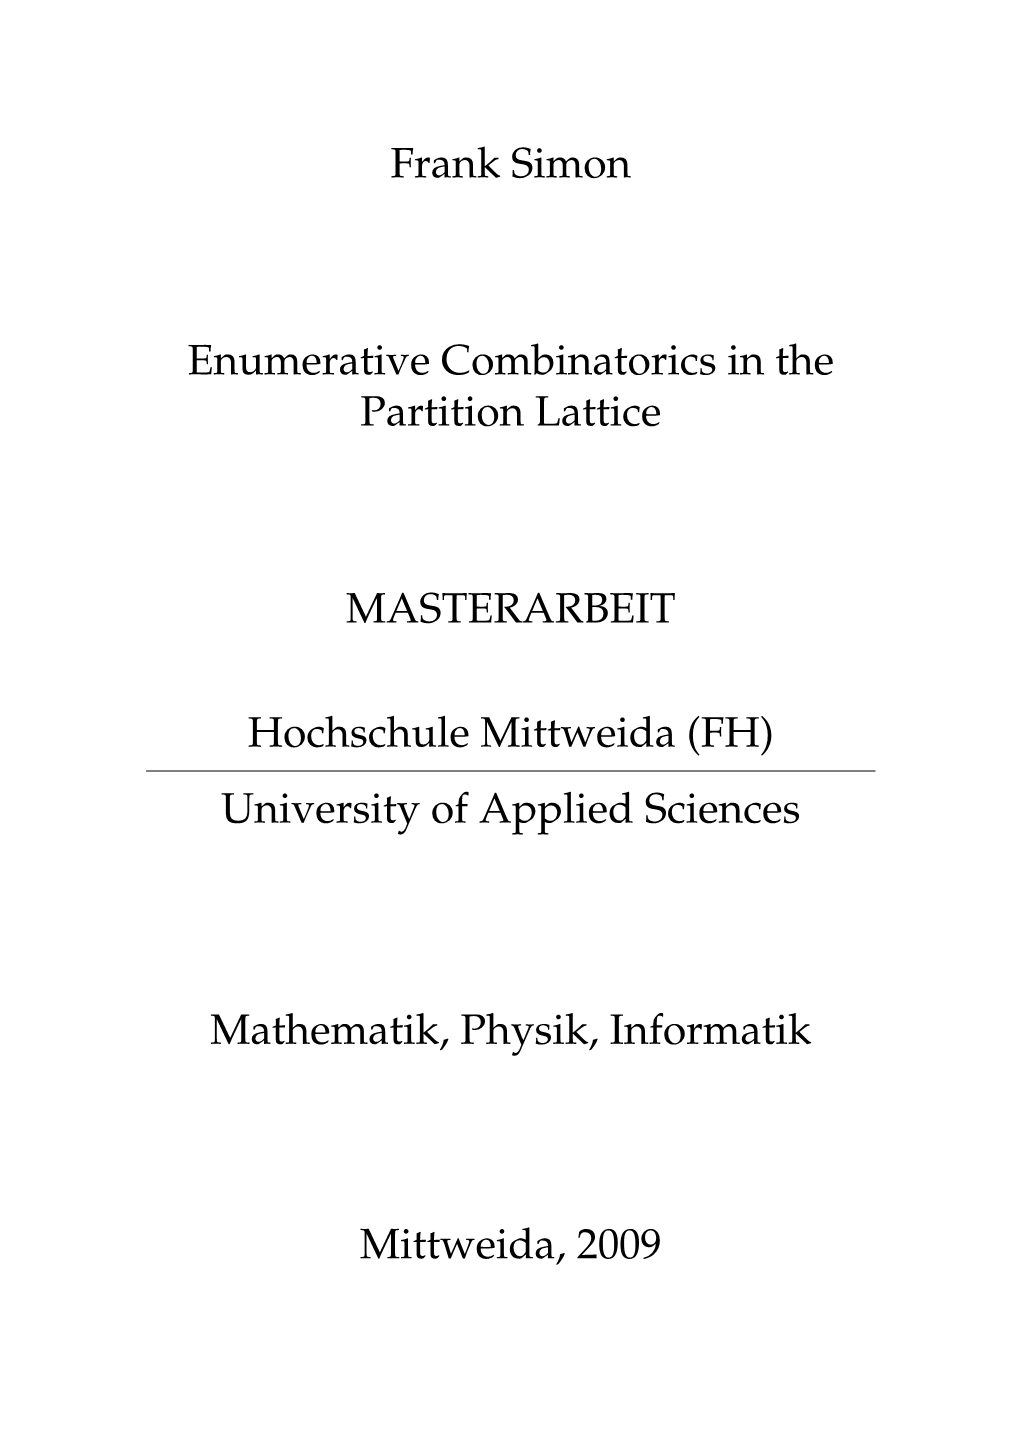 Frank Simon Enumerative Combinatorics in the Partition